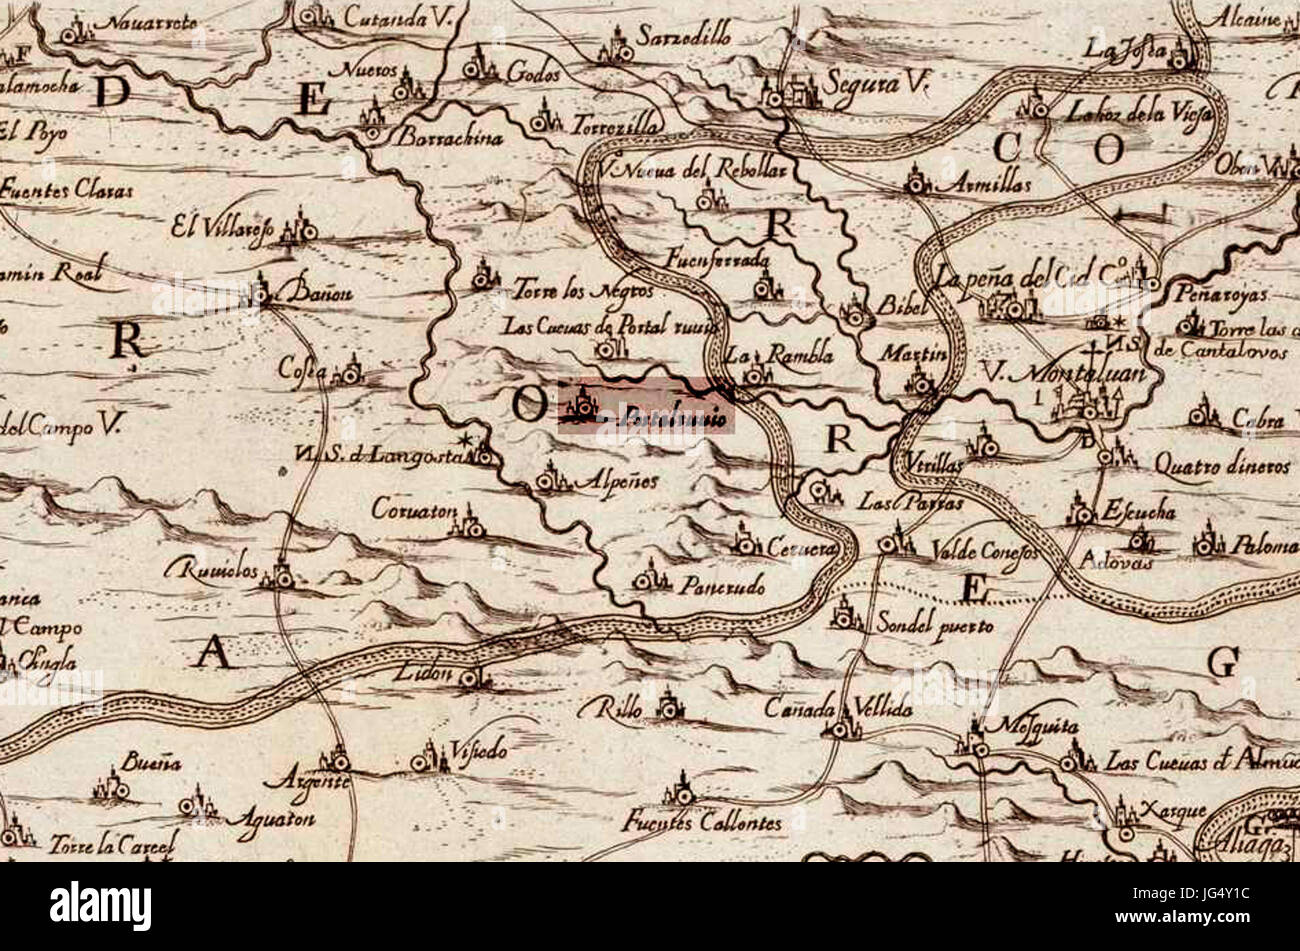 Portalrubio en el mapa de Labaña (1619) Stock Photo